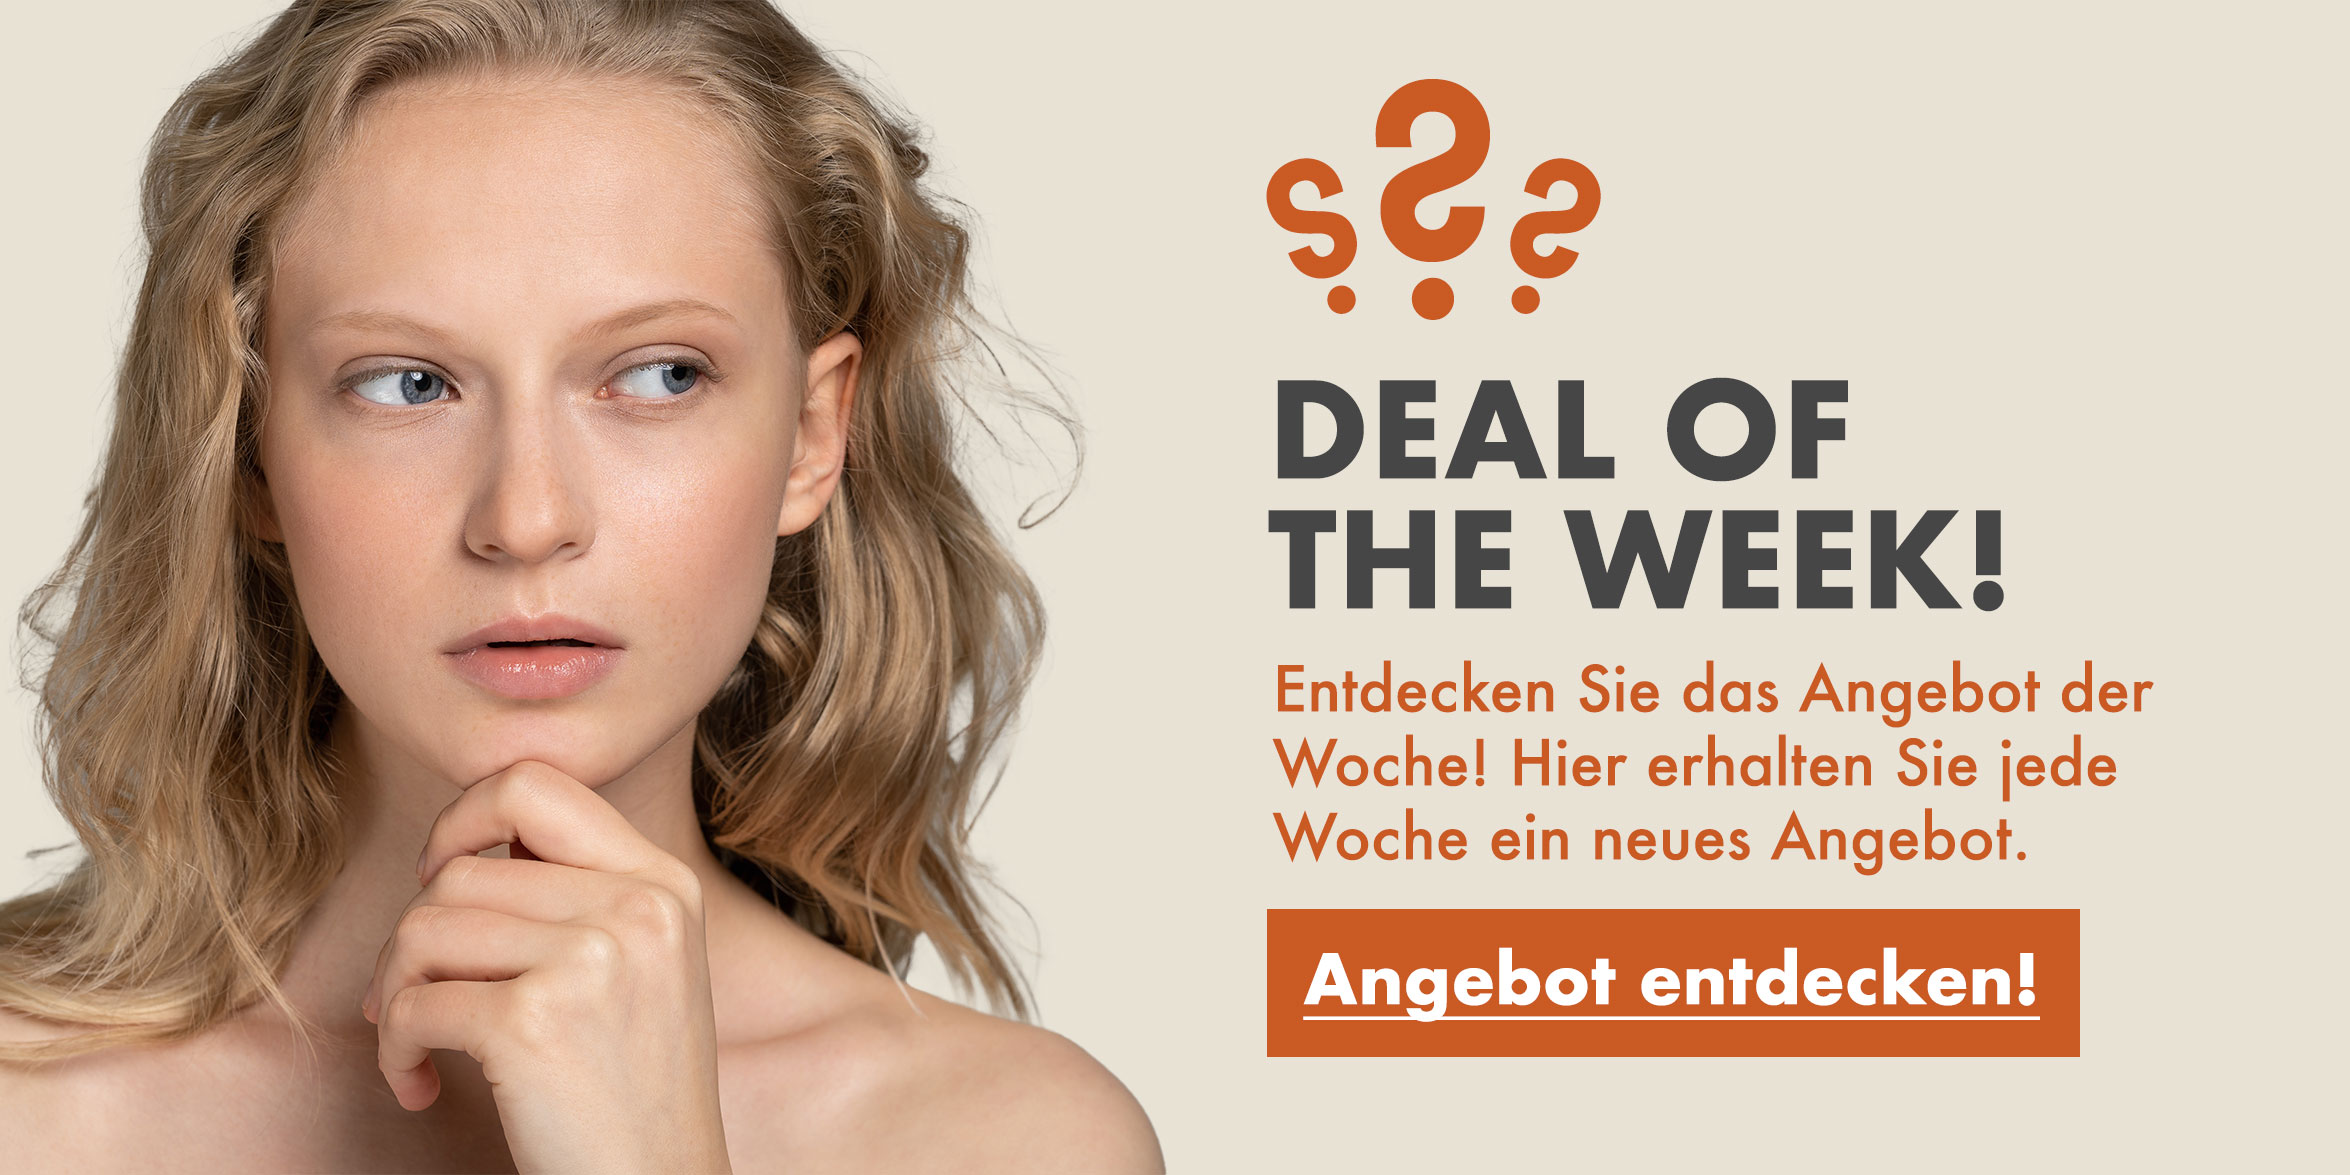 rau-cosmetics-banner-herbsthautpflege-gesichtspflege-onlineshop-wirkstoffkosmetik-deutschland